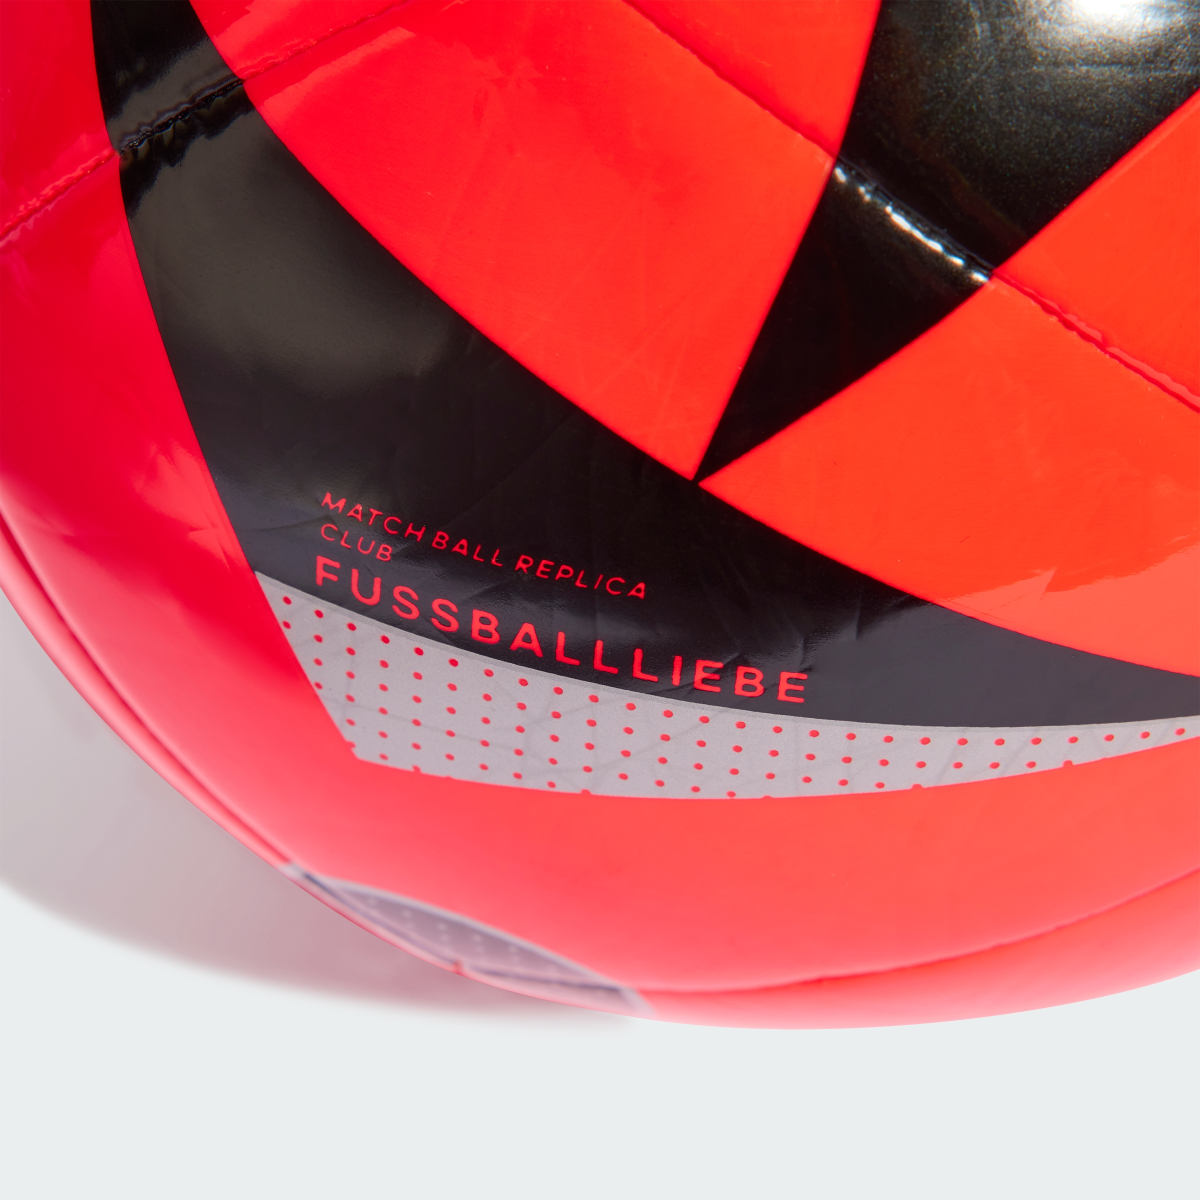 Adidas Ballon Fussballliebe Club. 5